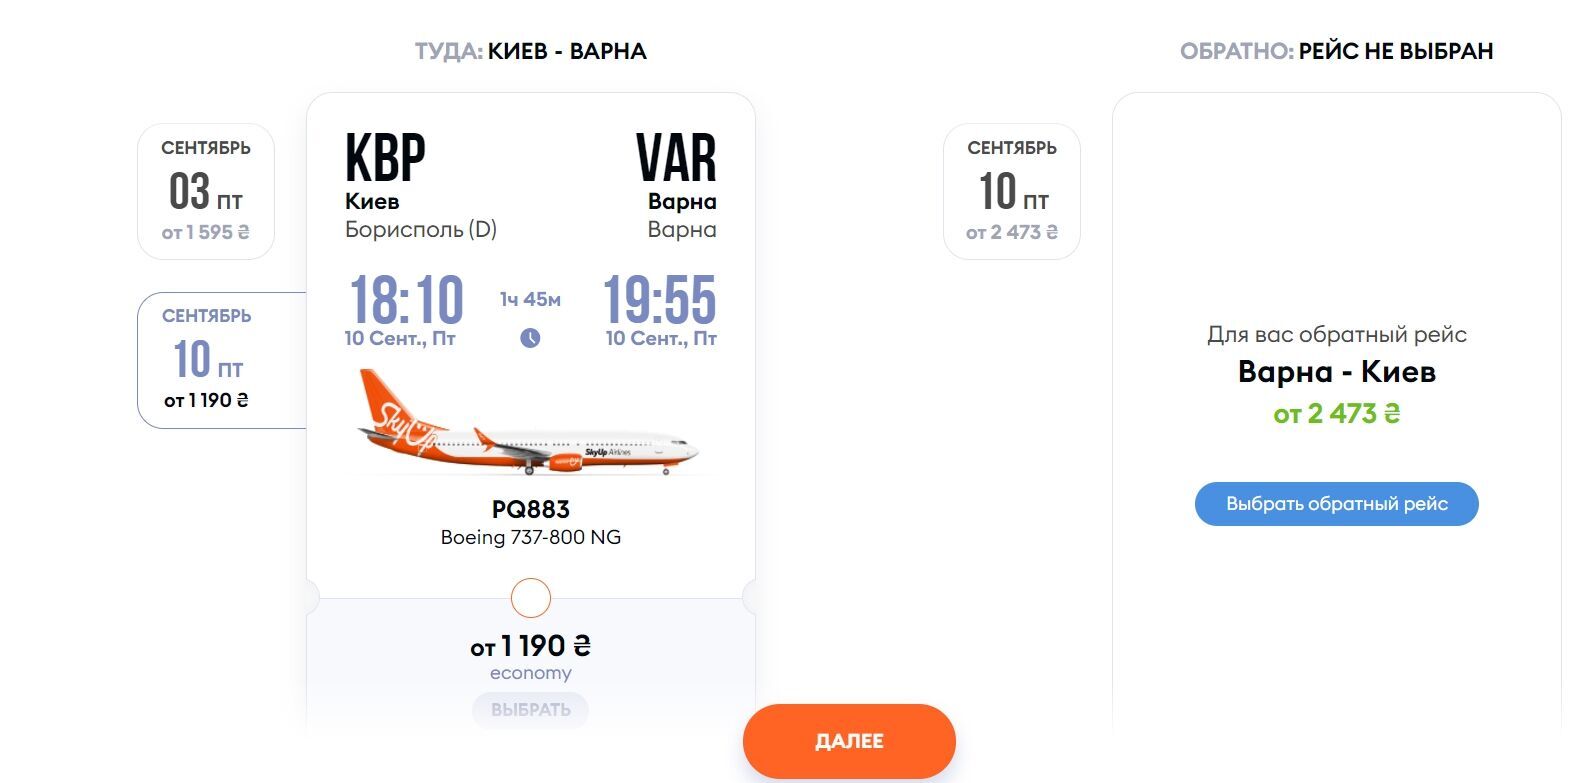 Билет на самолет "Киев – Варна" на середину сентября стоит 2400 грн